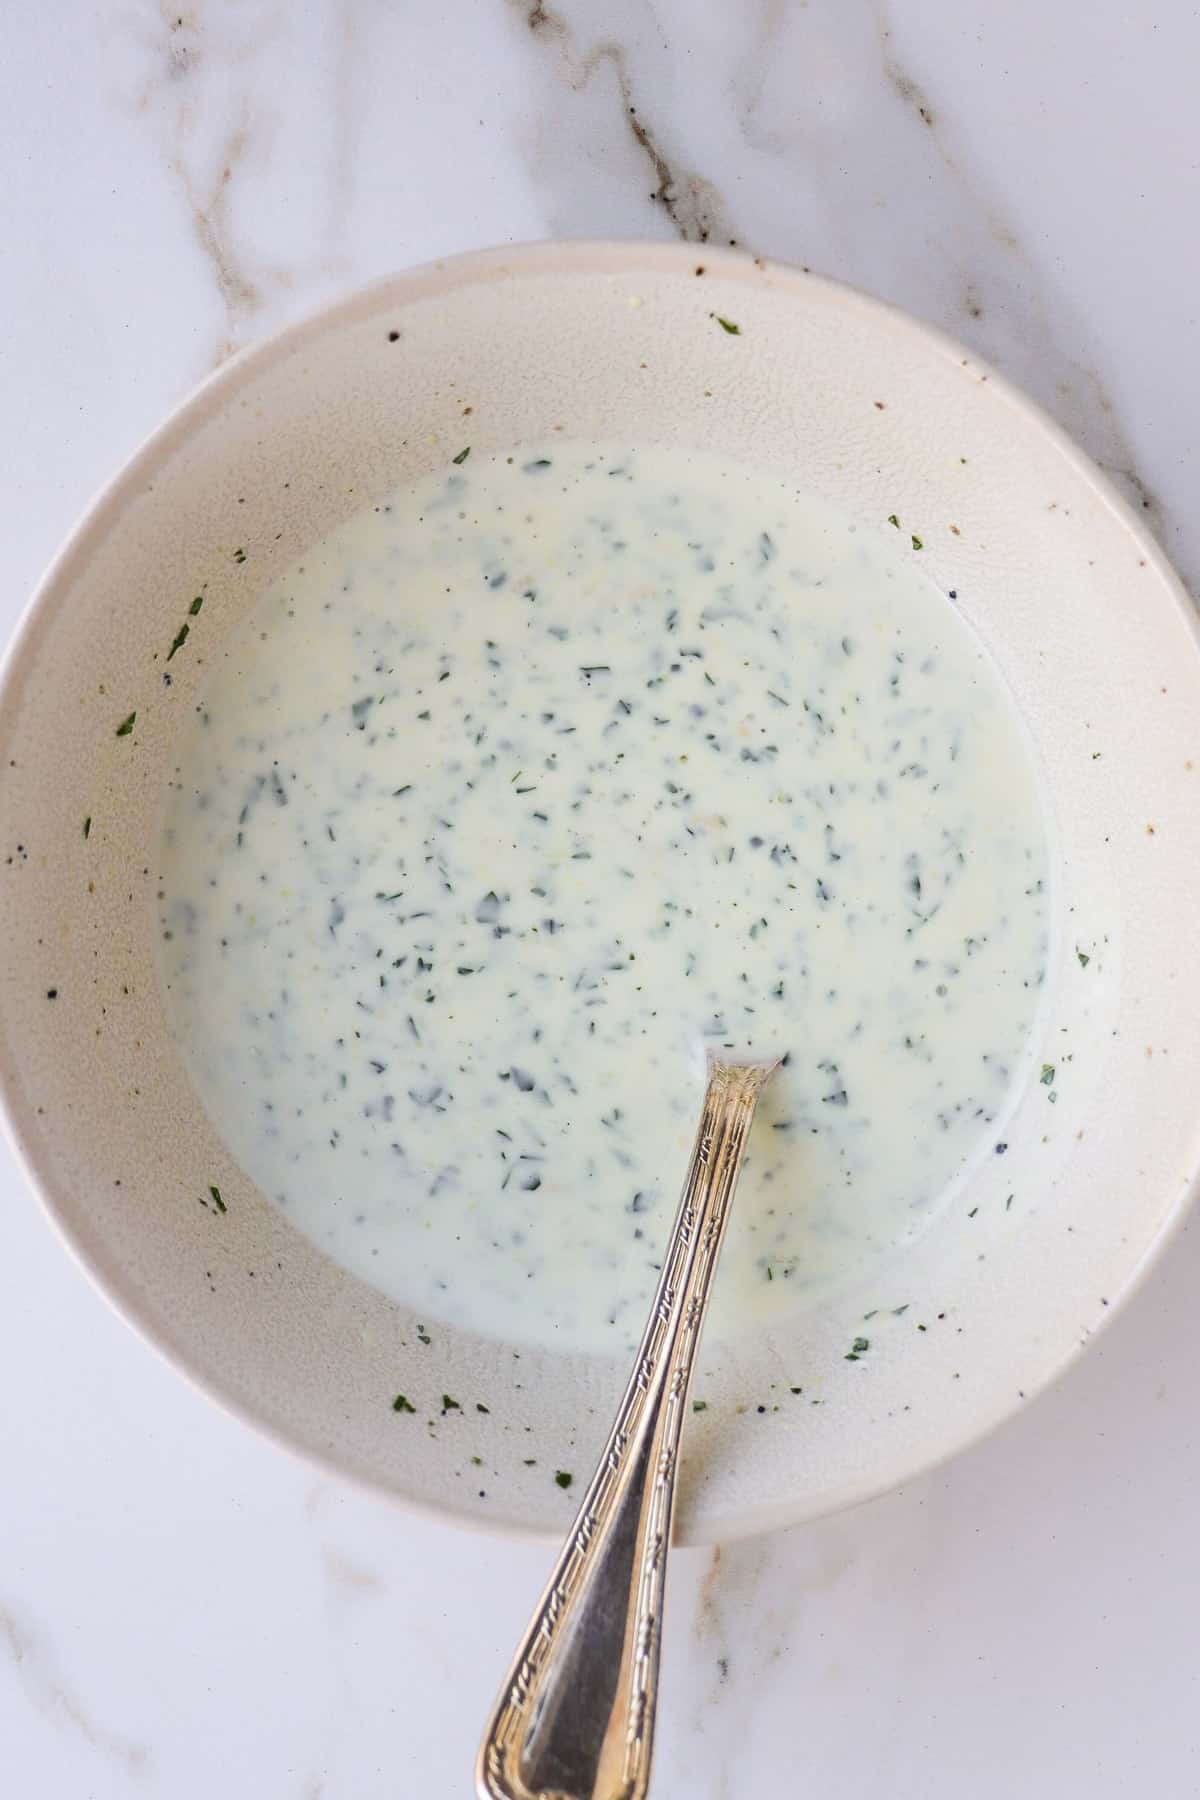 Creamy yoghurt dressing in a bowl.